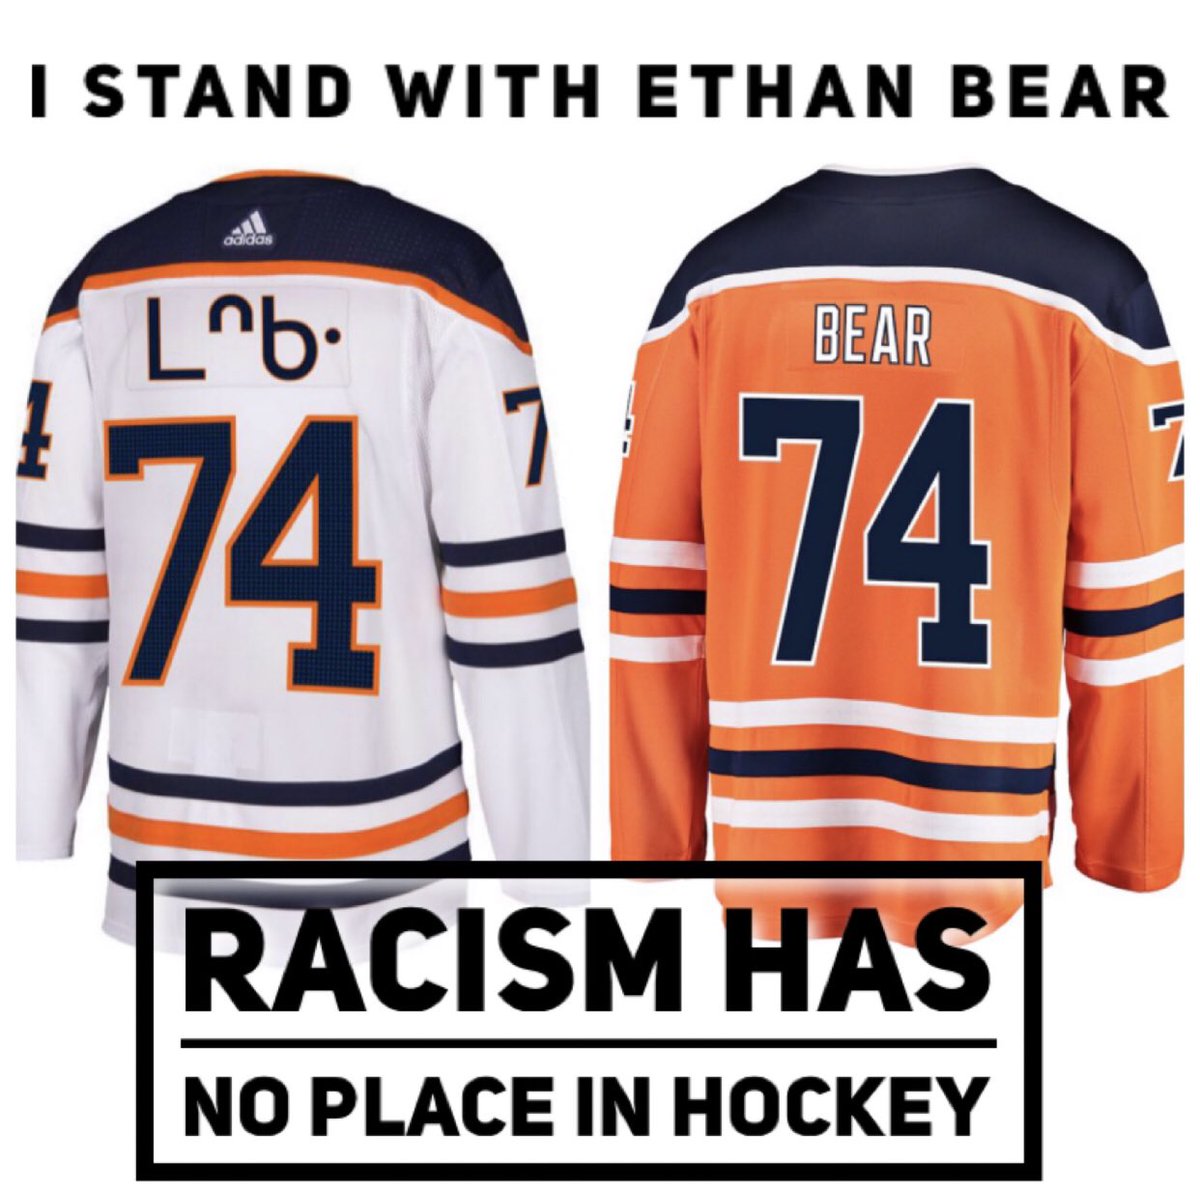 Edmonton Oilers defenseman Ethan Bear speaks up against racism